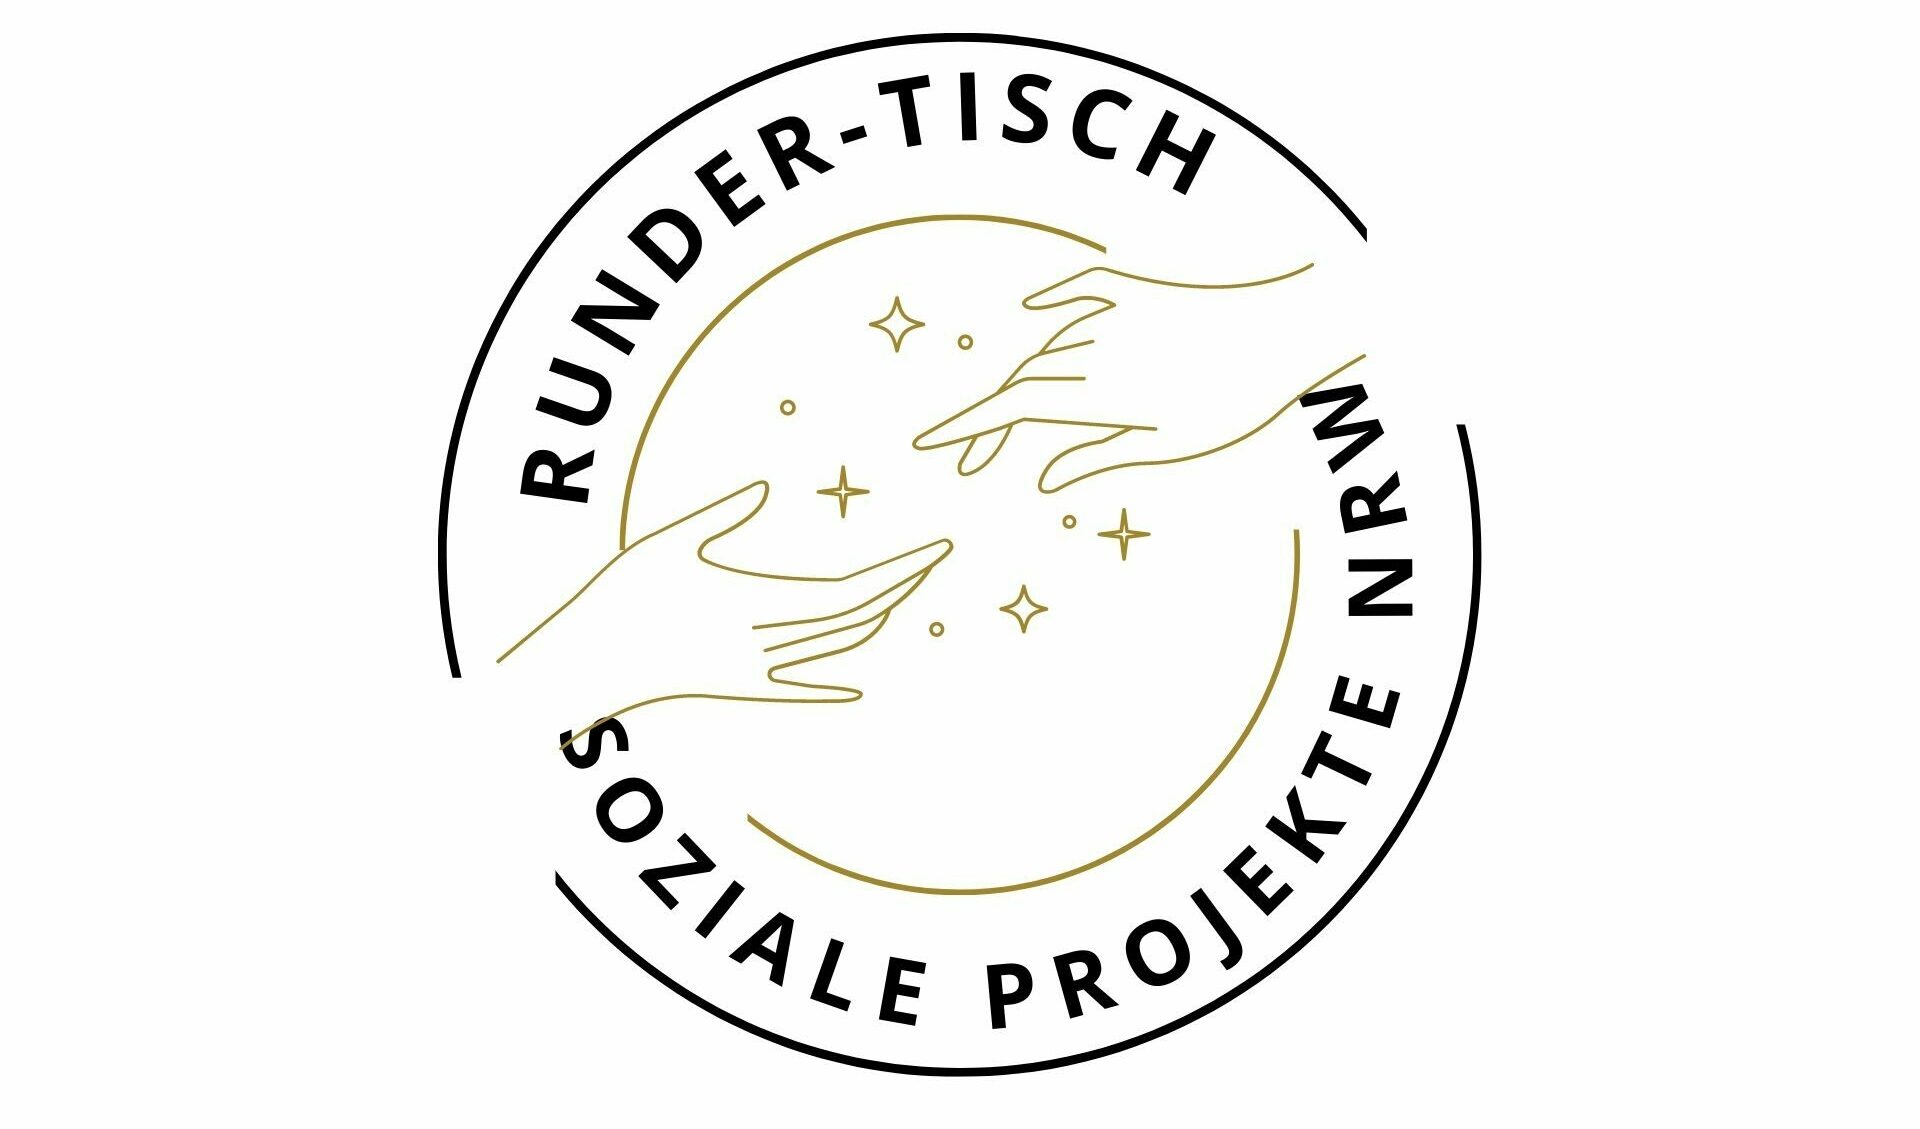 Runder-Tisch Initiative für soziale Projekte in NRW